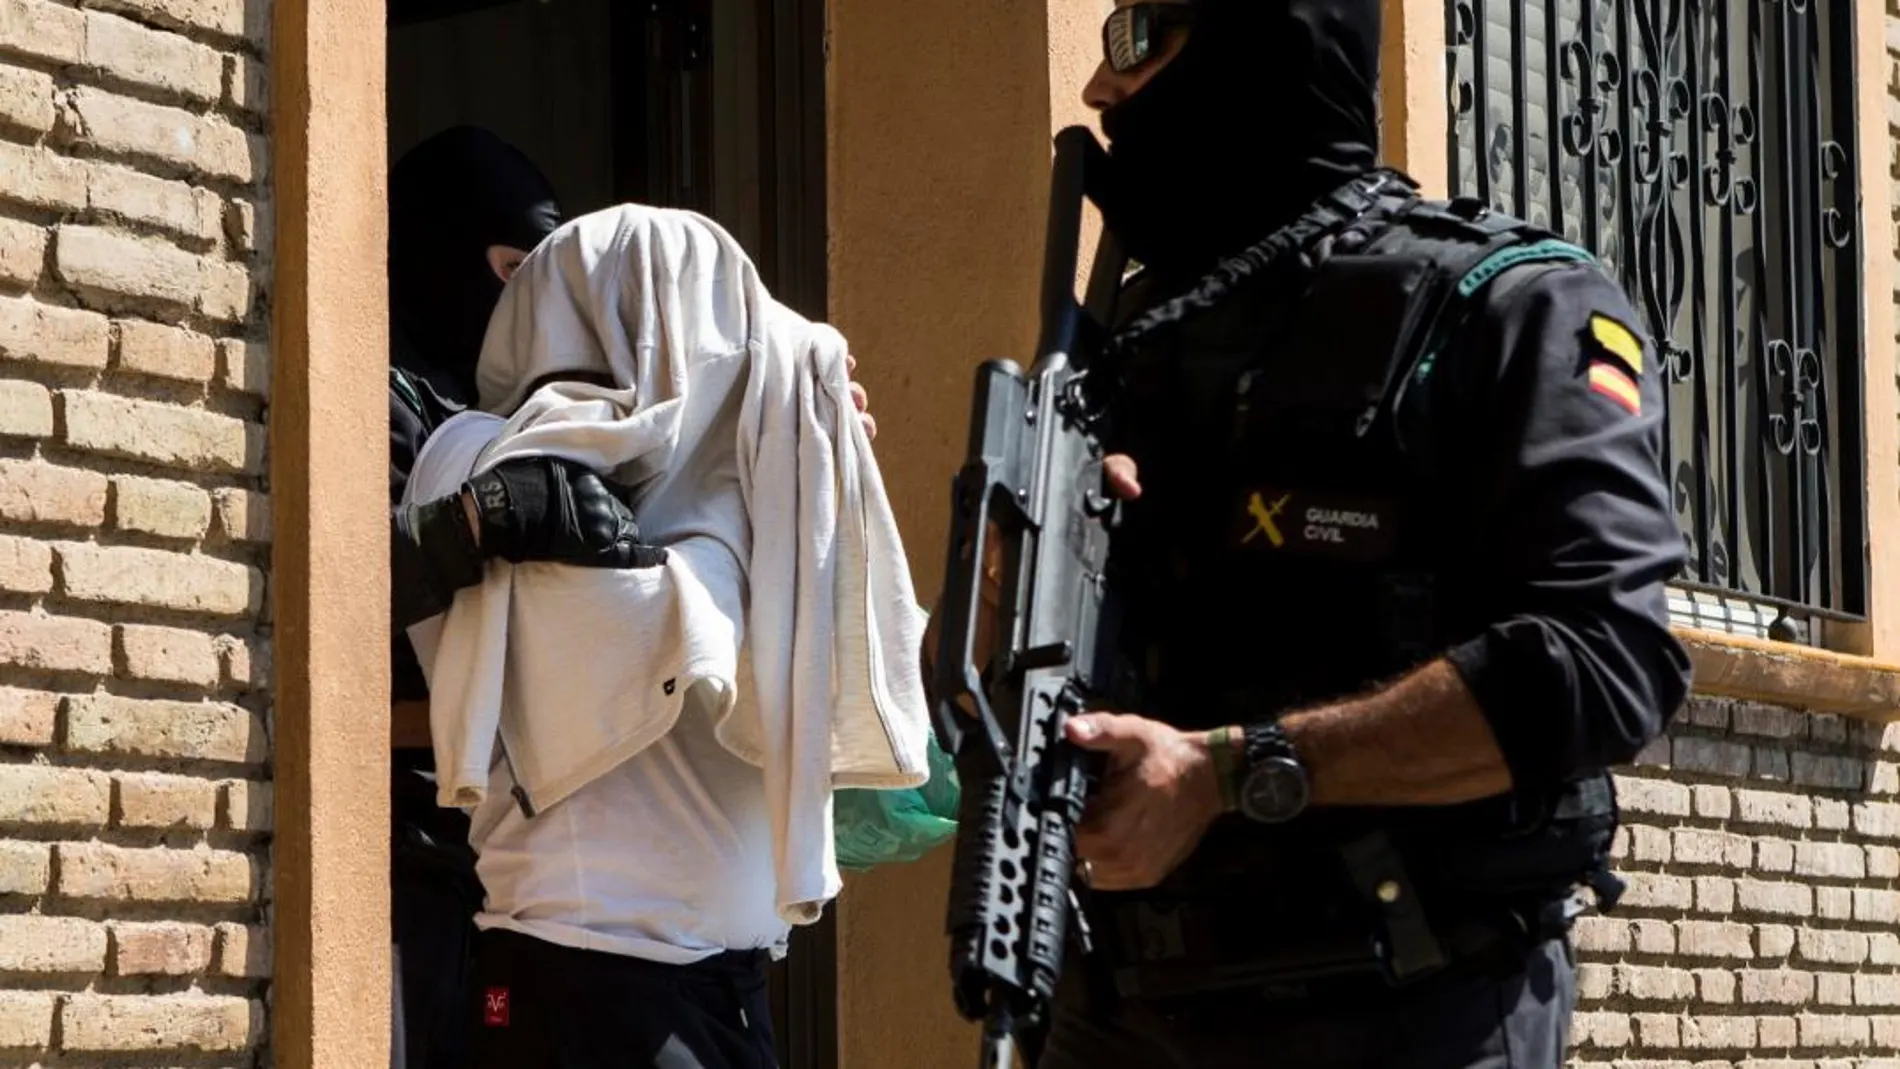 La Guardia Civil traslada a El Mostafa B.B., tras la operación en Mataró contra una célula yihadista el pasado miércoles